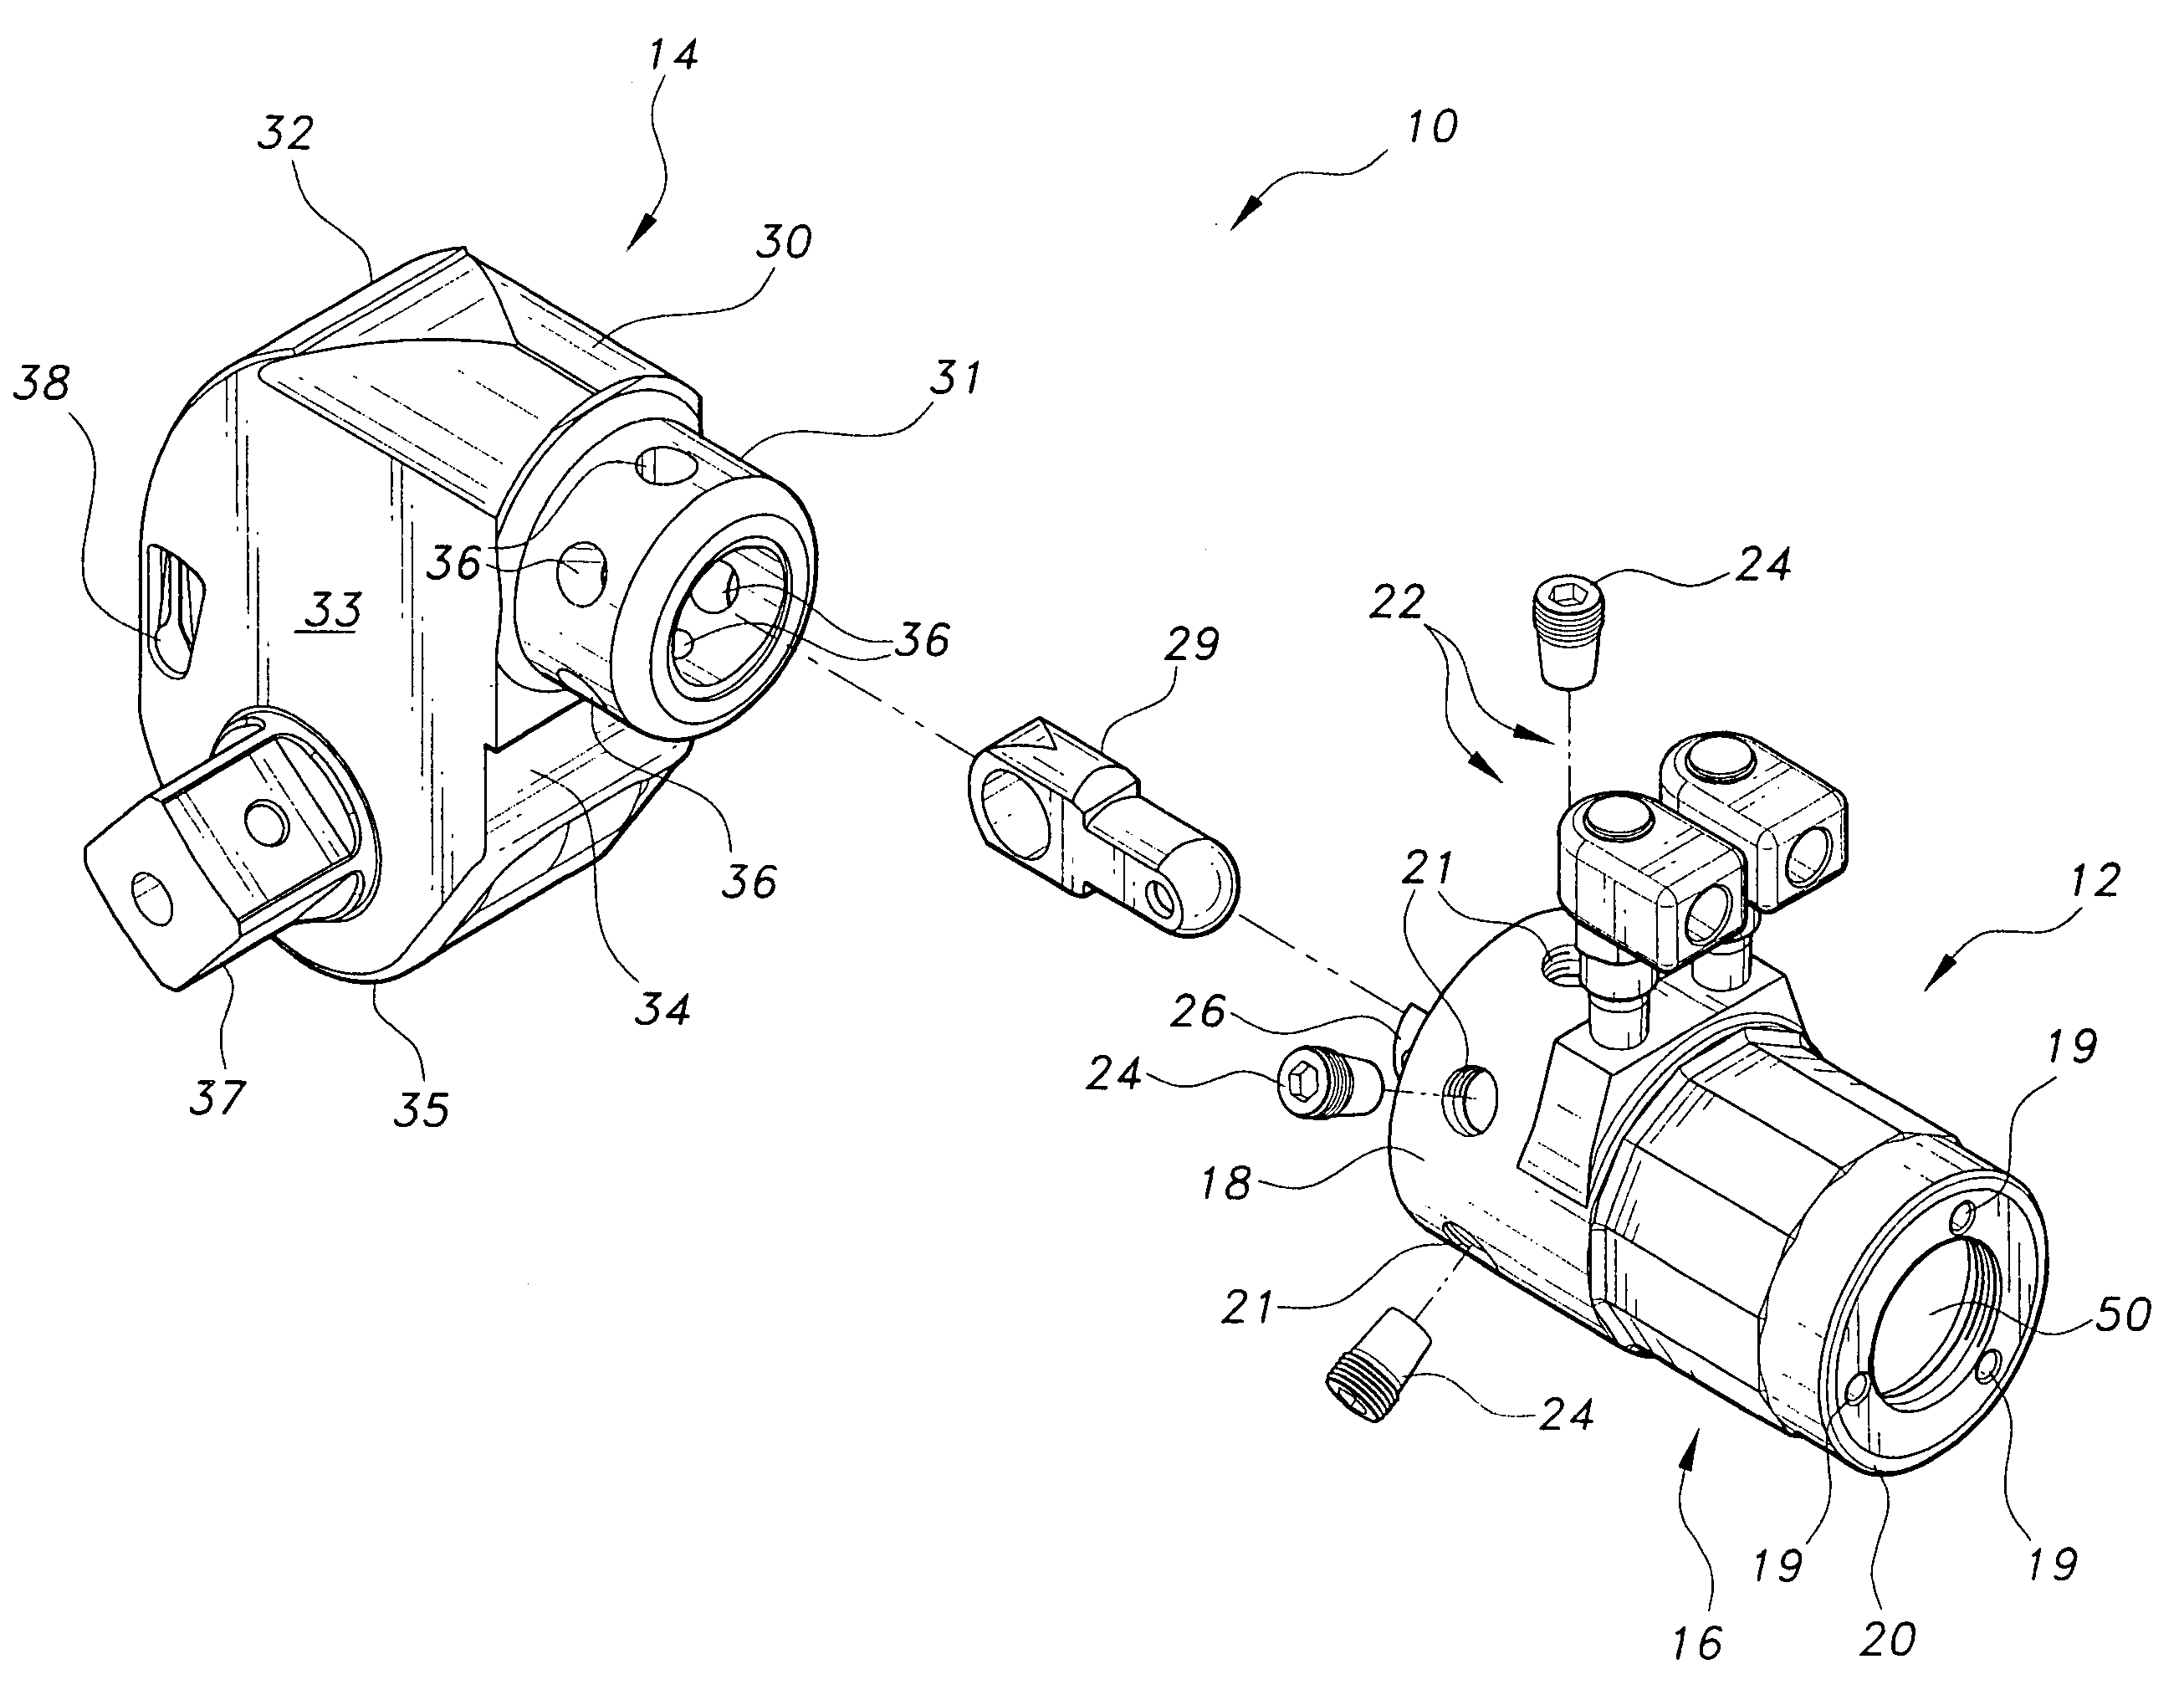 Hydraulic torque wrench system